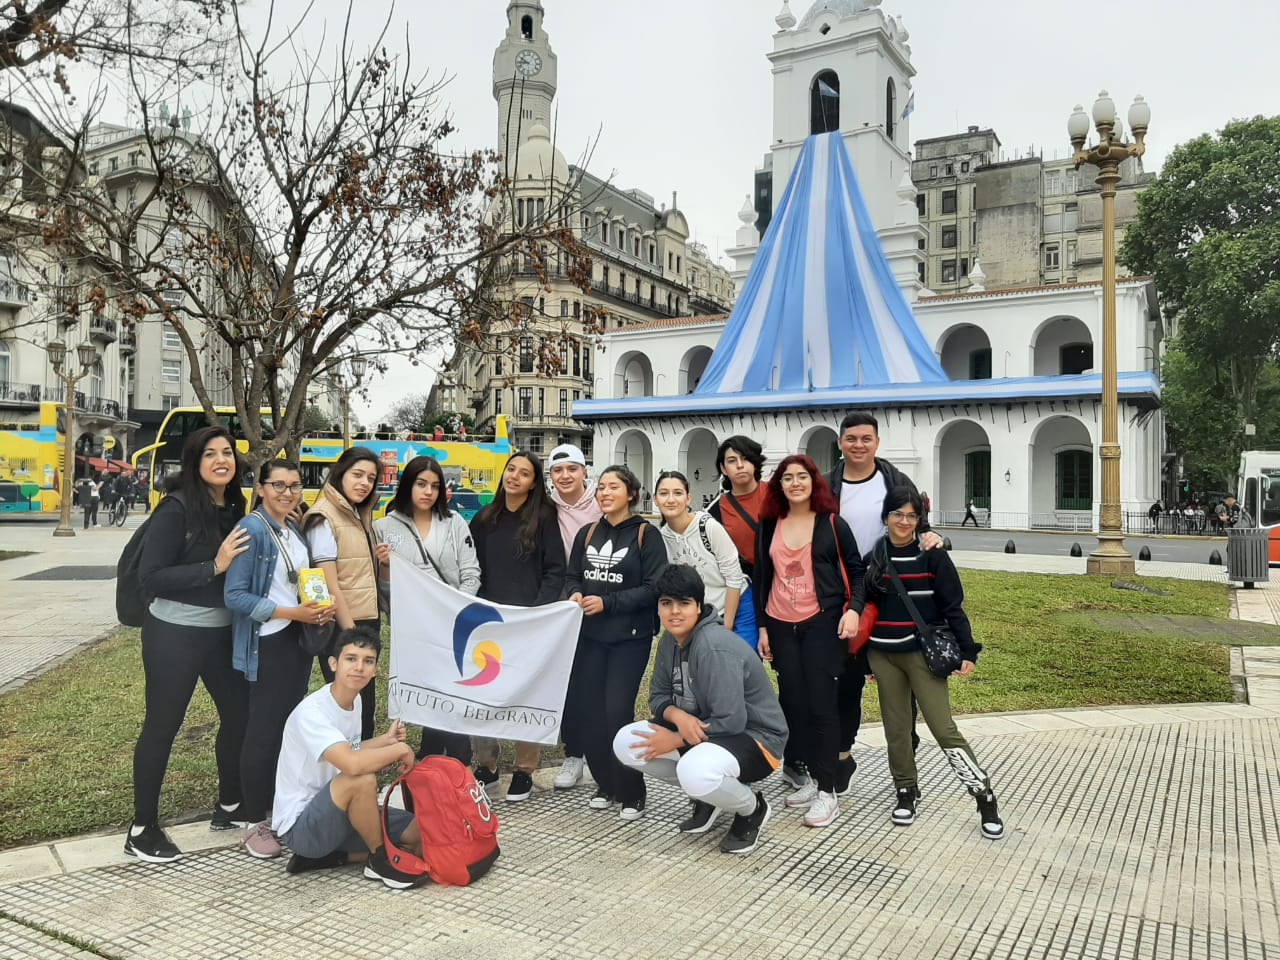 Juventudes y Derechos se eligieron 3 producciones de alumnos del Colegio Belgrano